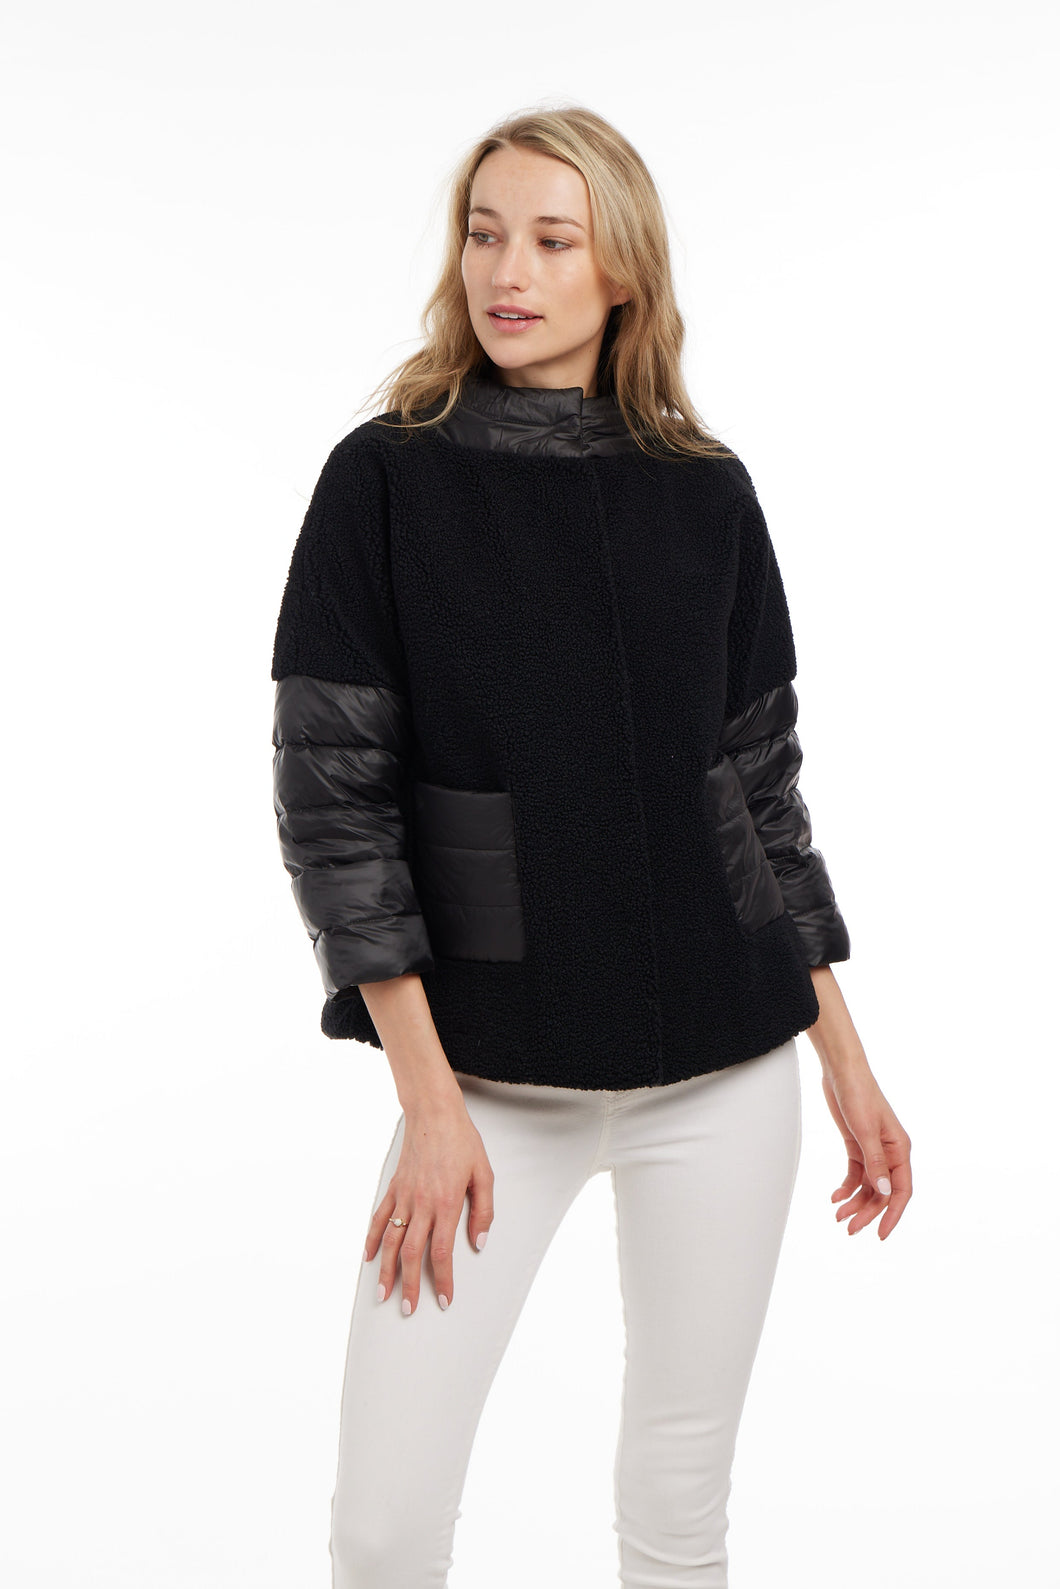 FF23-300 Tiffany Coat